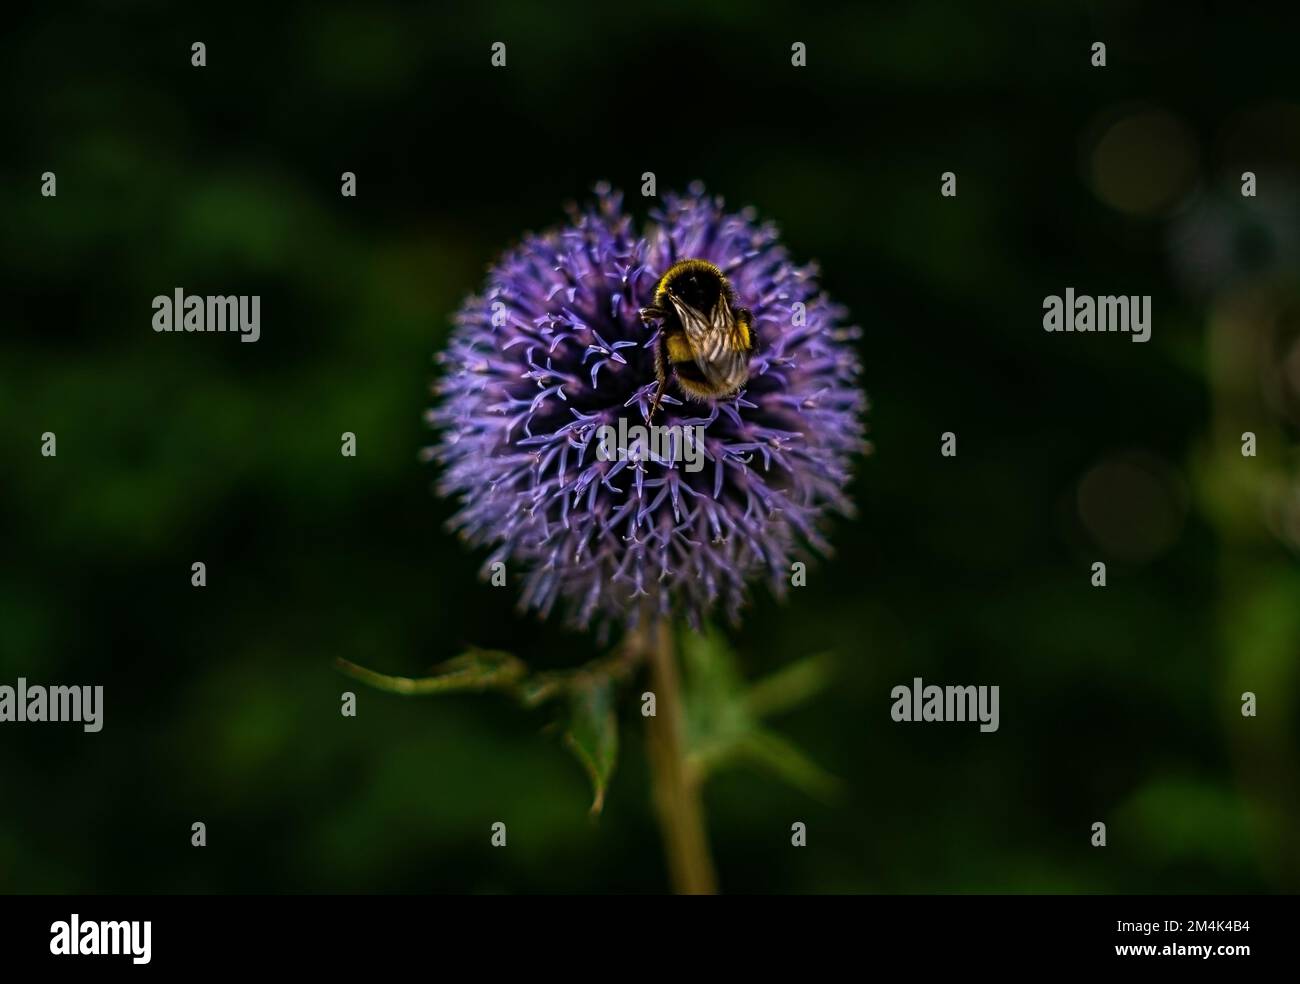 Il photo présente un Allium violet foncé avec une guêpe, prise à Londres, en Angleterre. Les couleurs vives de la fleur contrastent. allium violet foncé, insecte, Banque D'Images